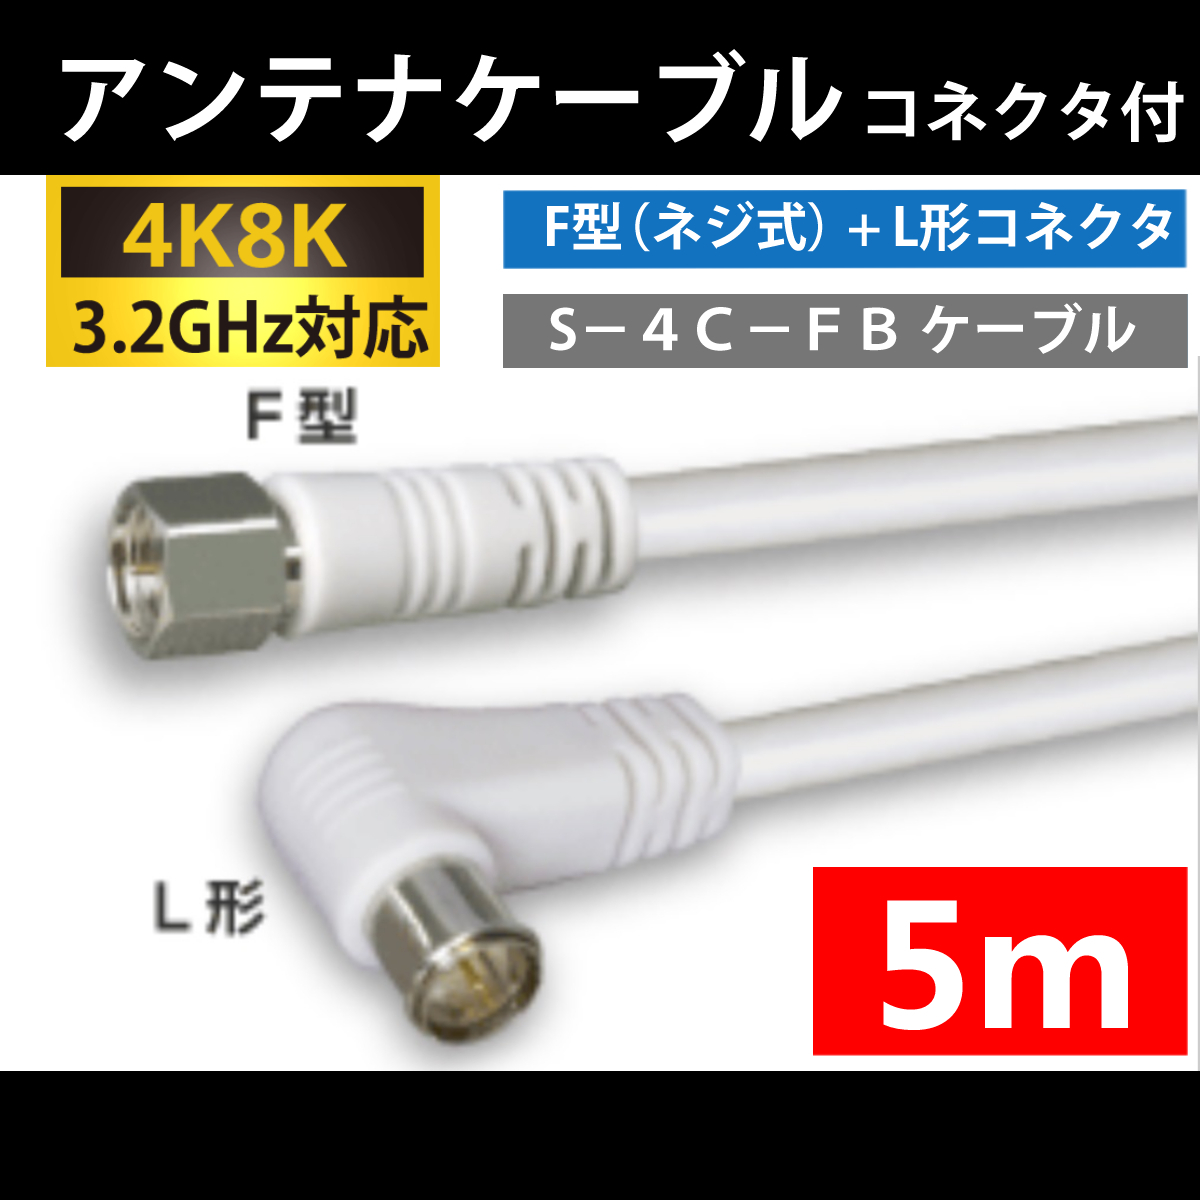 【送料無料】 4K8K対応 / アンテナケーブル 5m / F型 + L型 プラグ / 4C同軸ケーブル_画像1